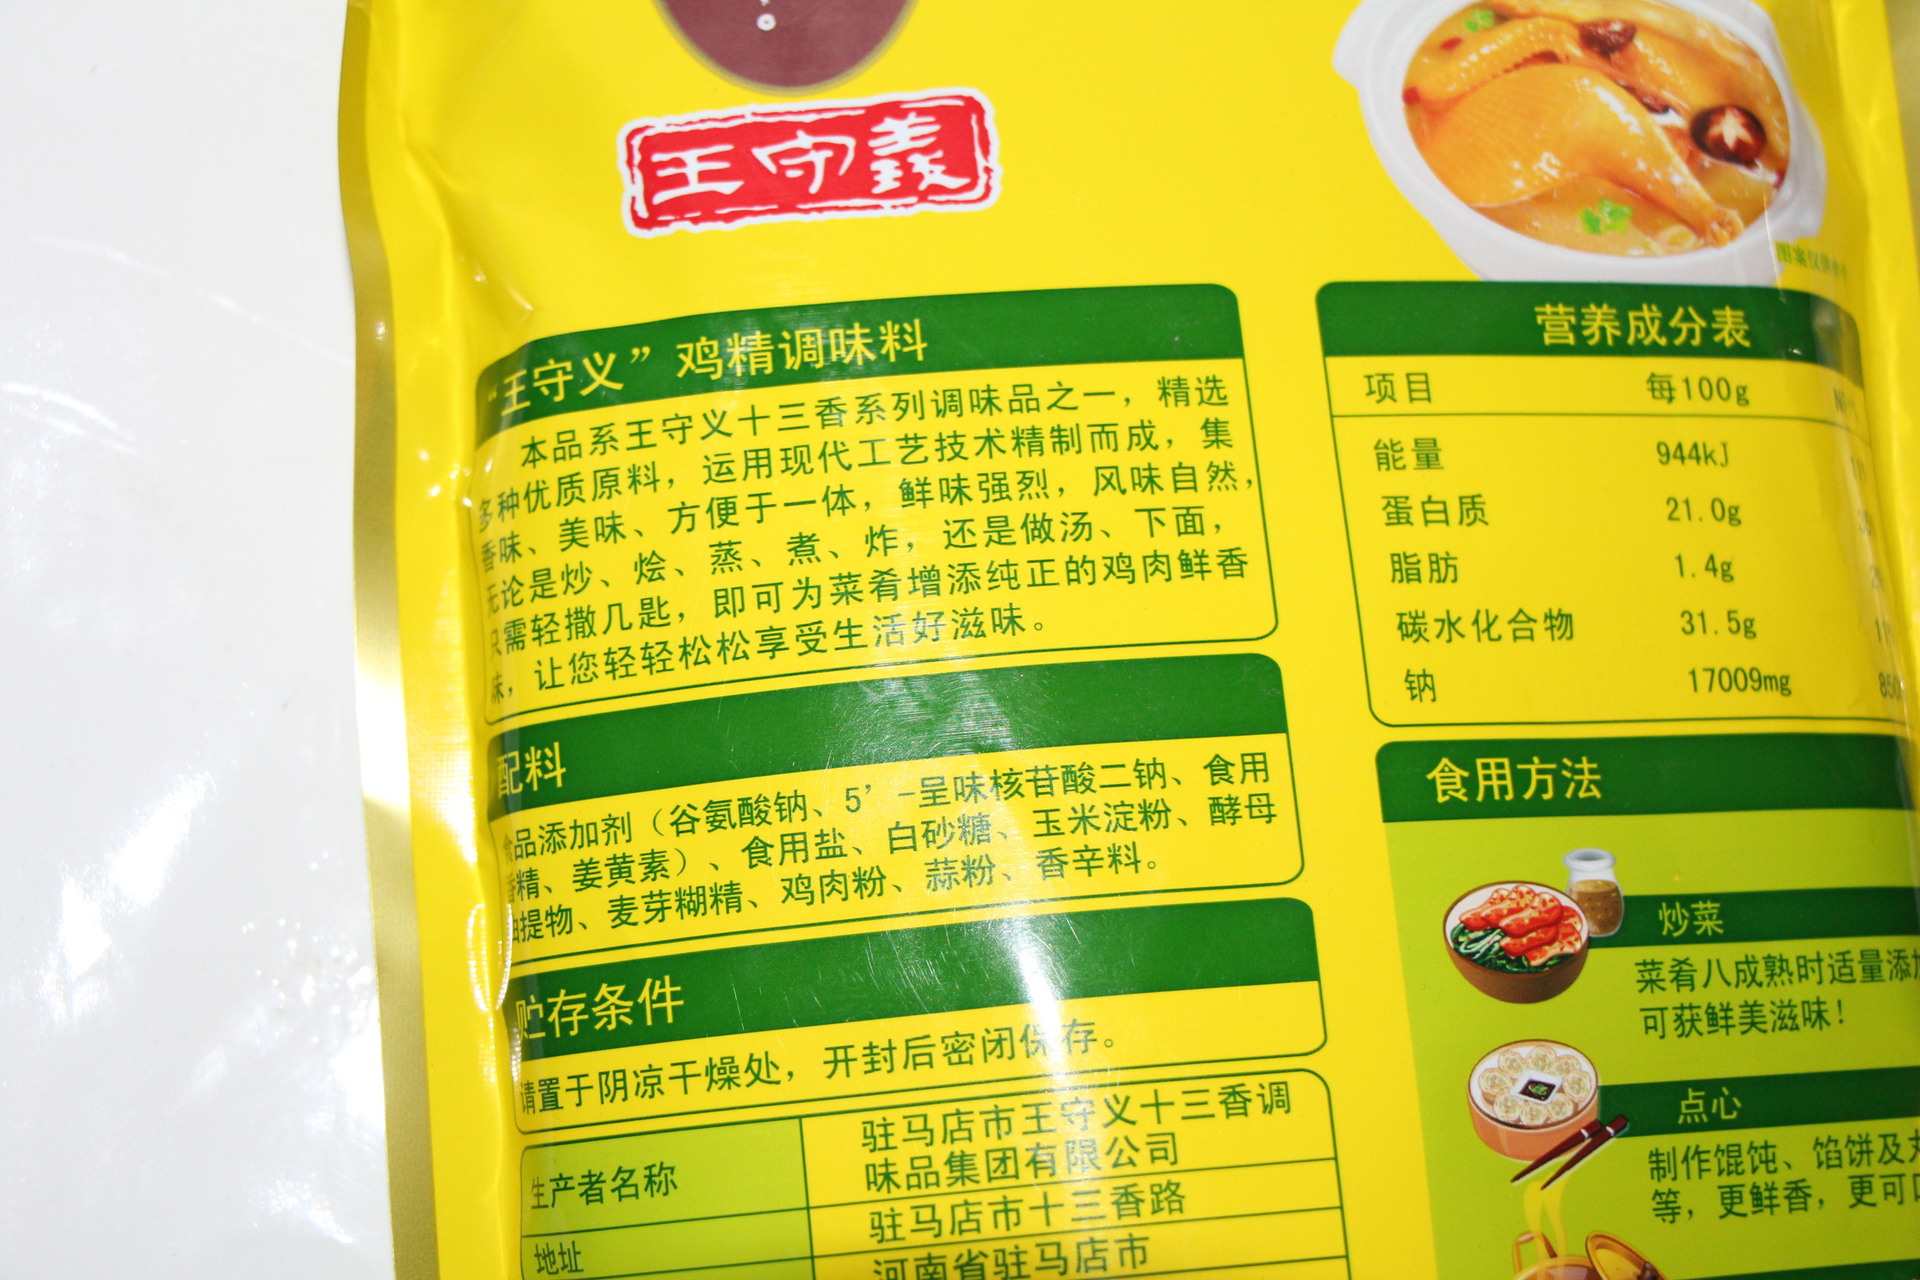 食用方法:王守义鸡精每包454克,每箱10包本店专业配送小吃配料,调味品